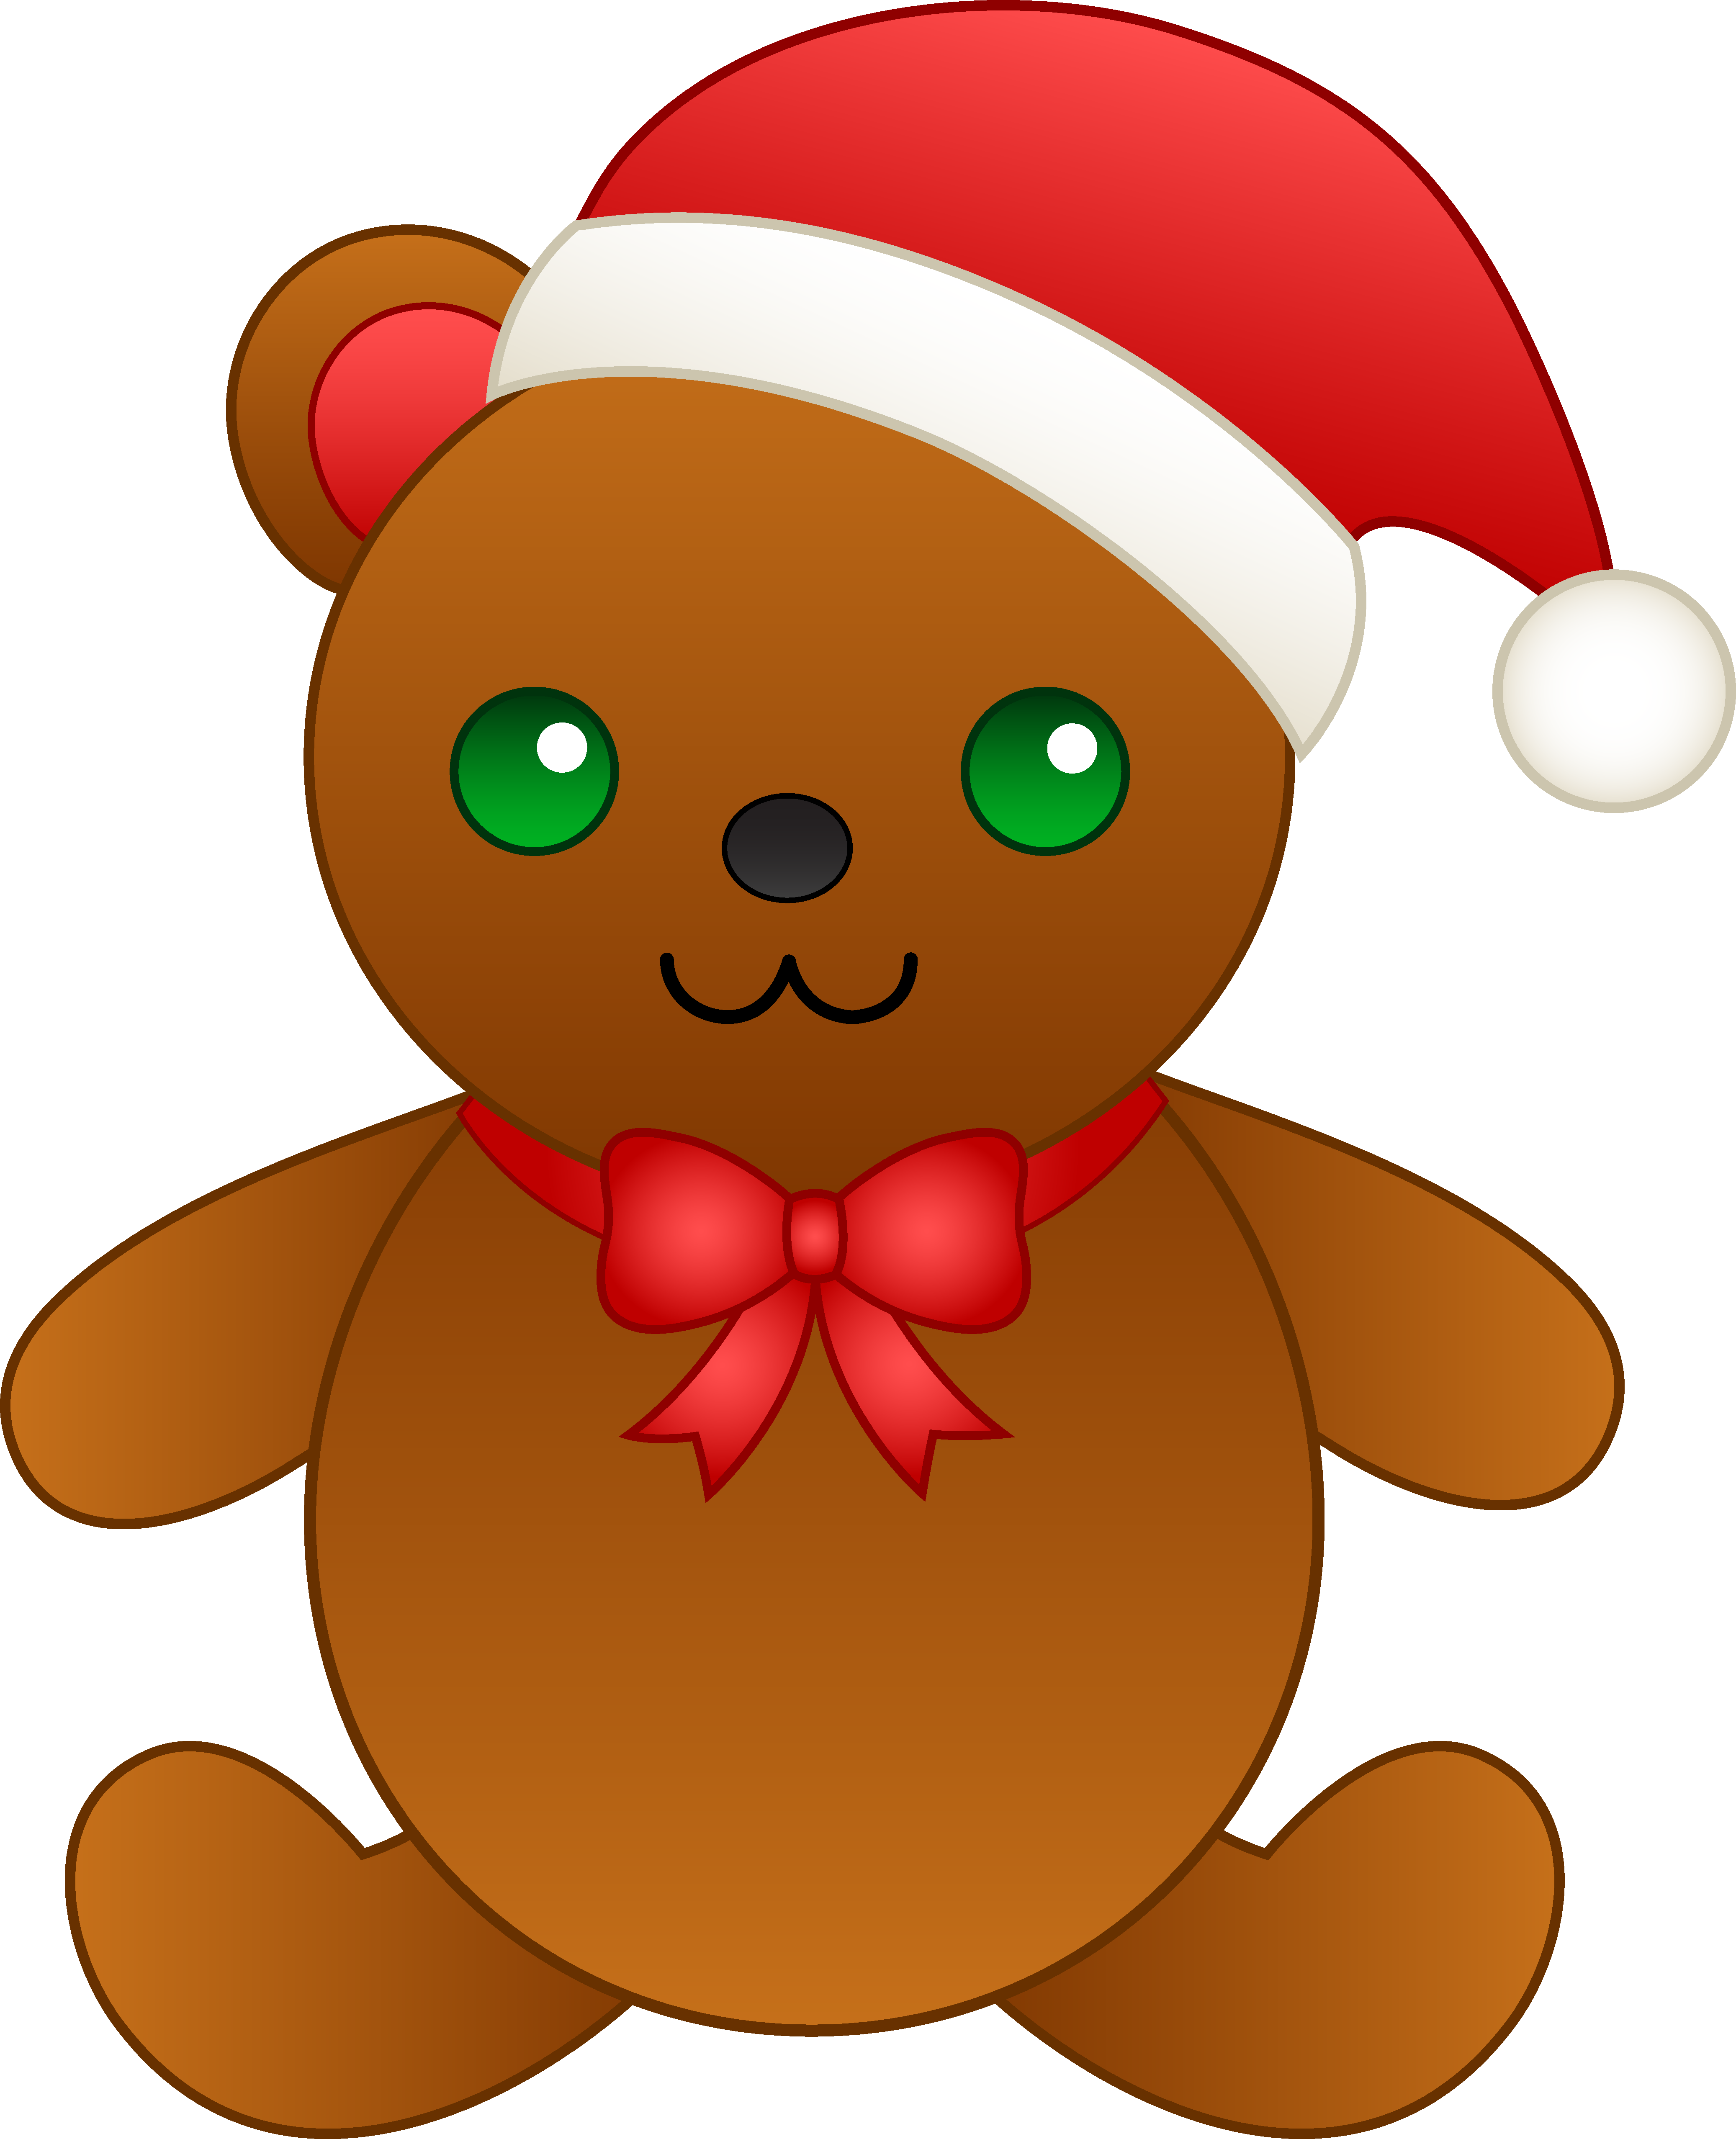 Christmas teddy bear clip art - ClipartFox